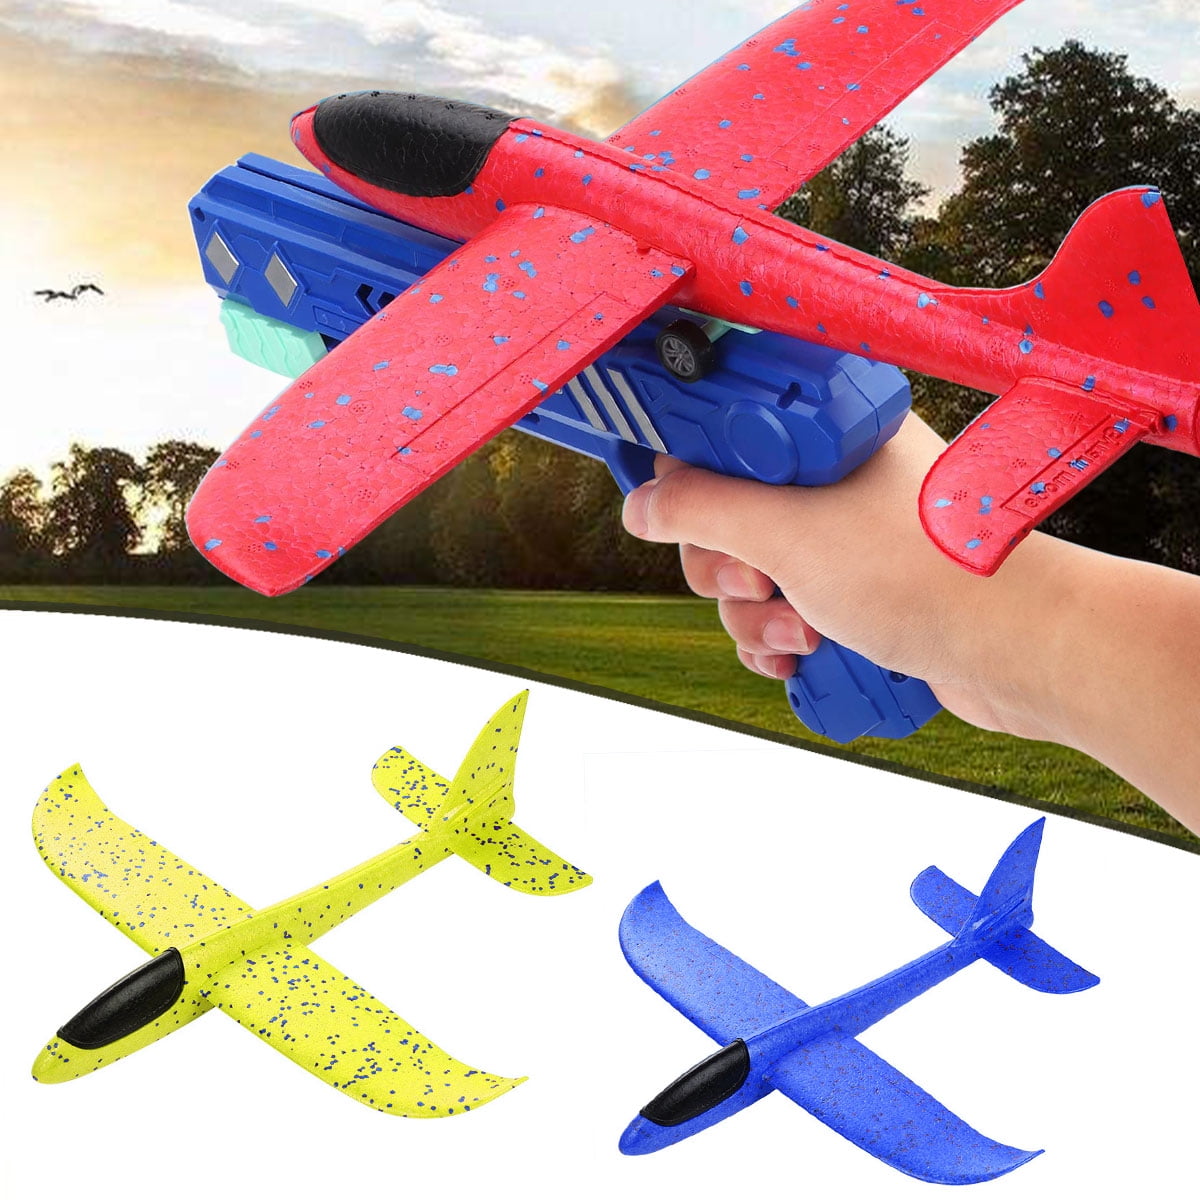 Flying toy. Летающие игрушки. Игрушка с ниткой которая летает. Gear plane игрушка. Игрушка летающий ветленитор в небо.